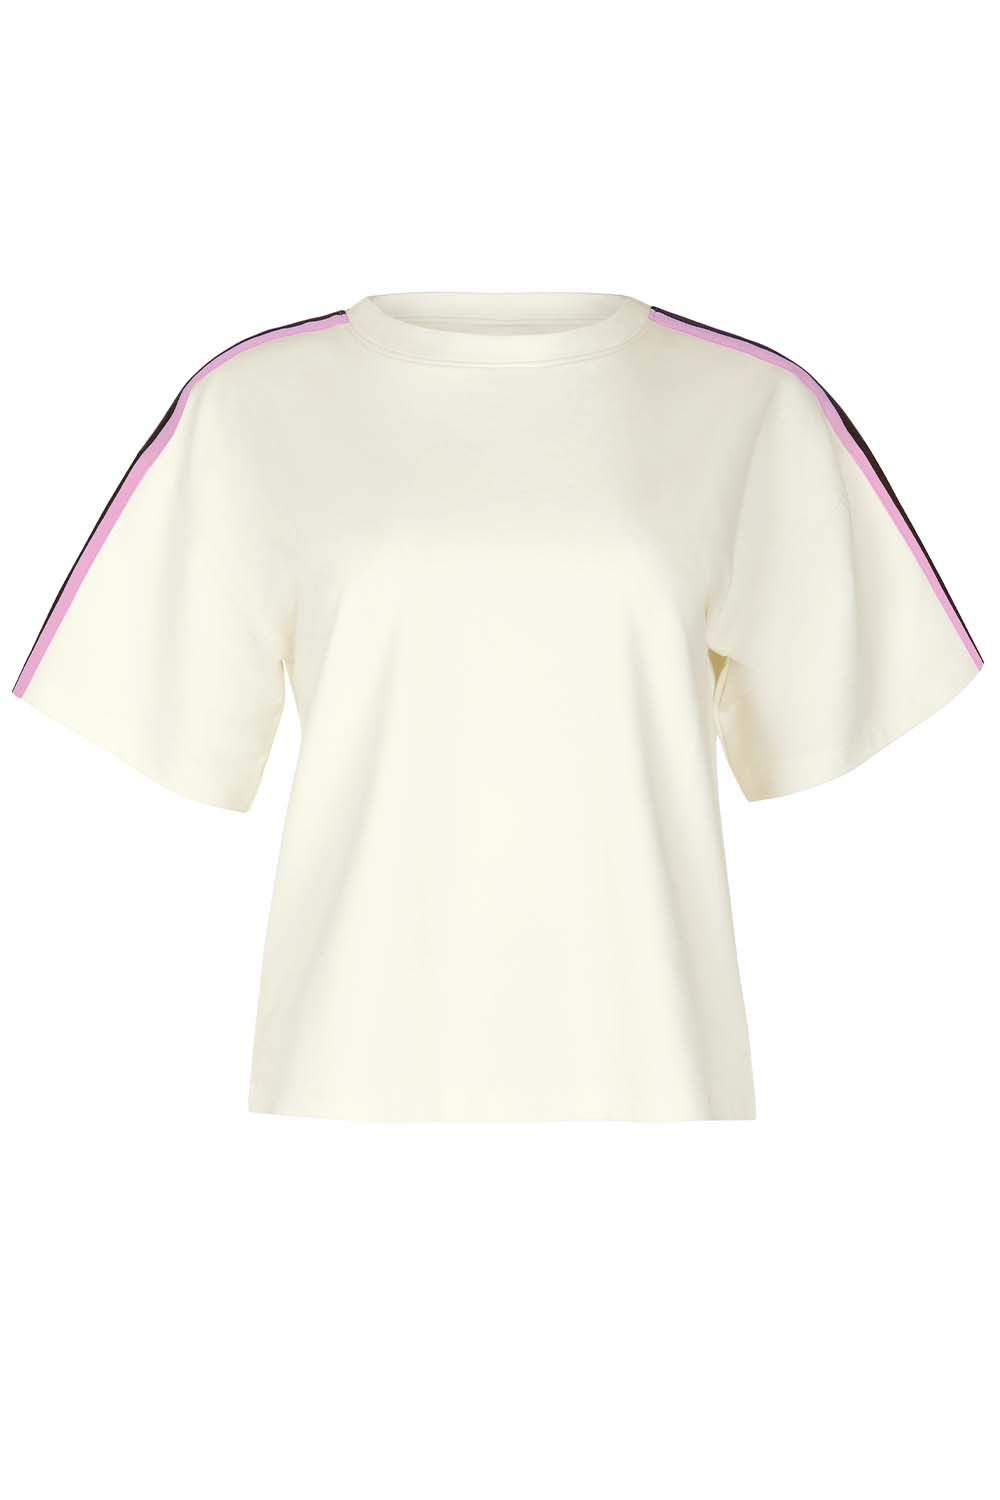 Cheek Shirt kurzarm Retromania 38 elfenbein günstig online kaufen